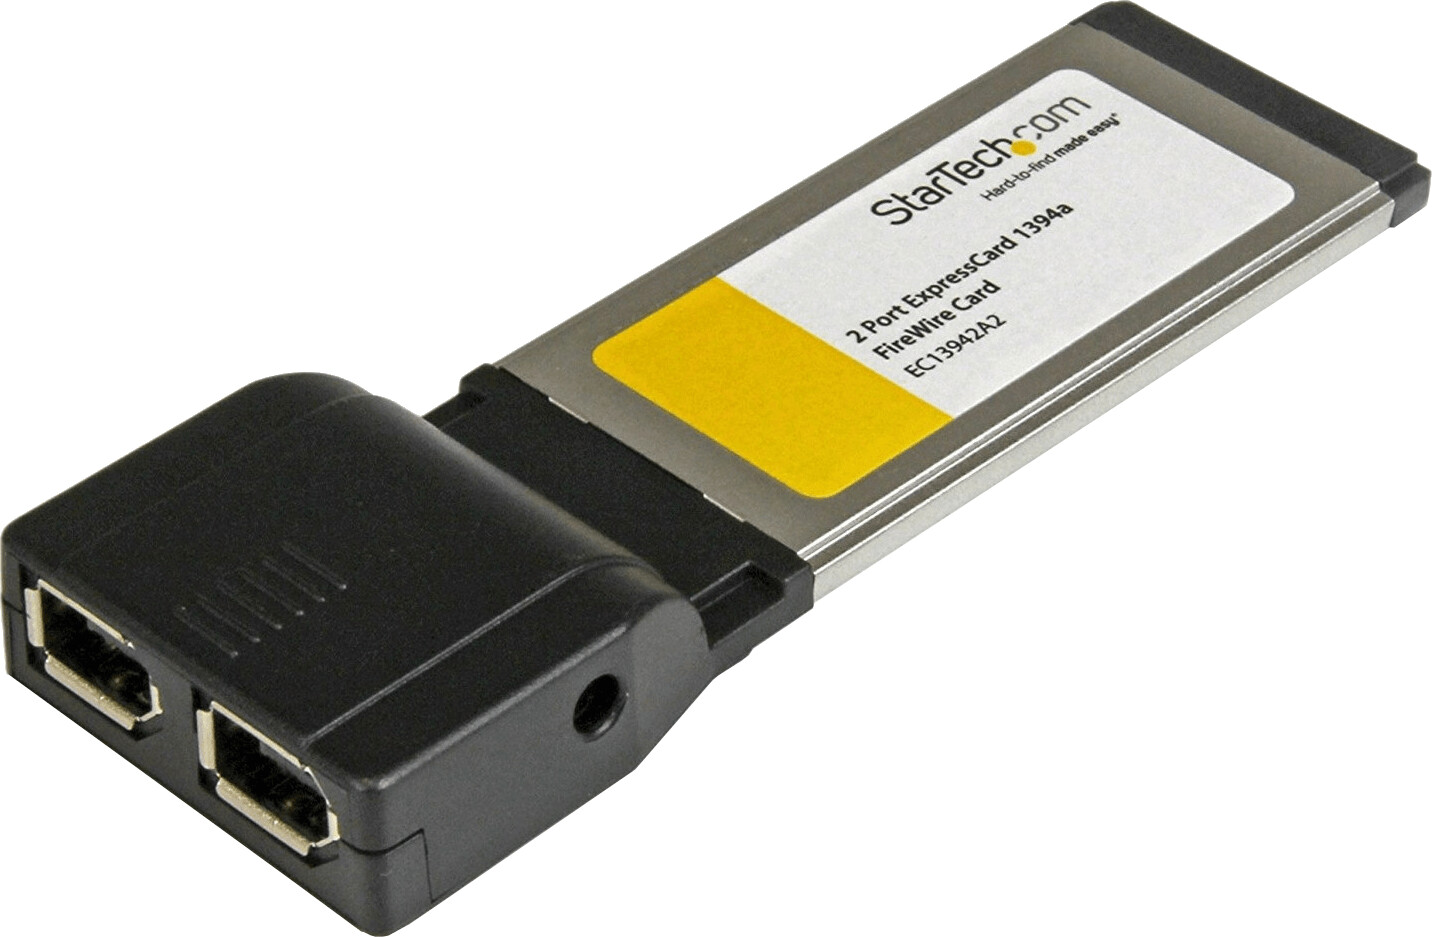 StarTech ExpressCard FireWire 400 (EC13942A2)